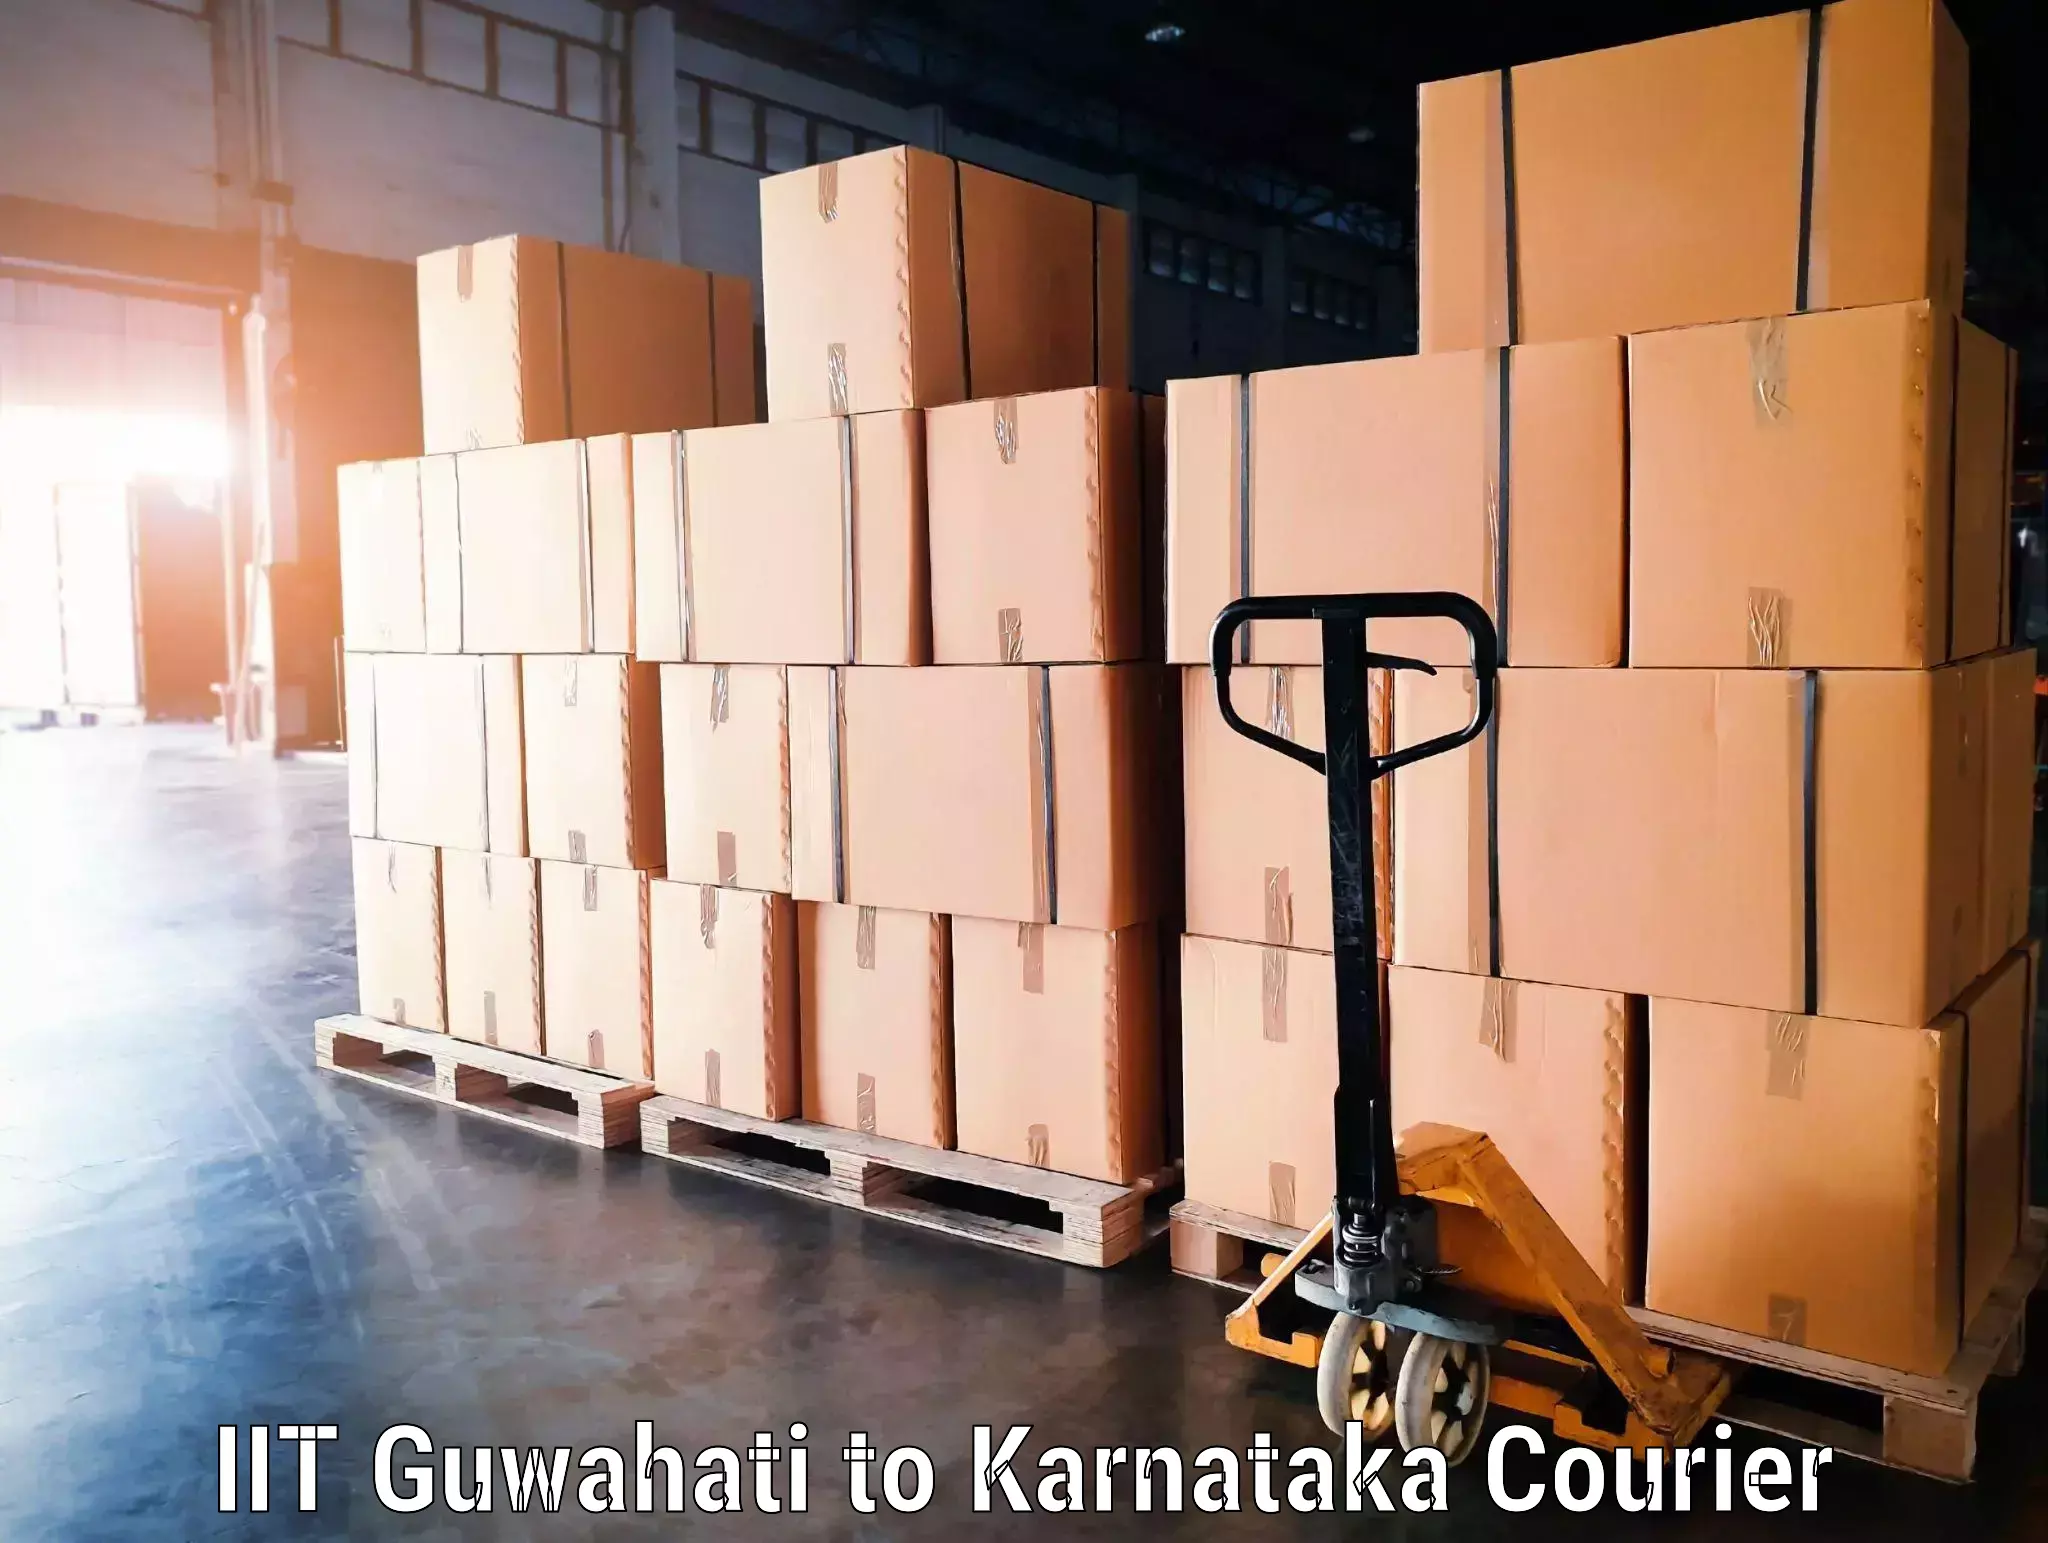 Rural baggage transport in IIT Guwahati to Karnataka